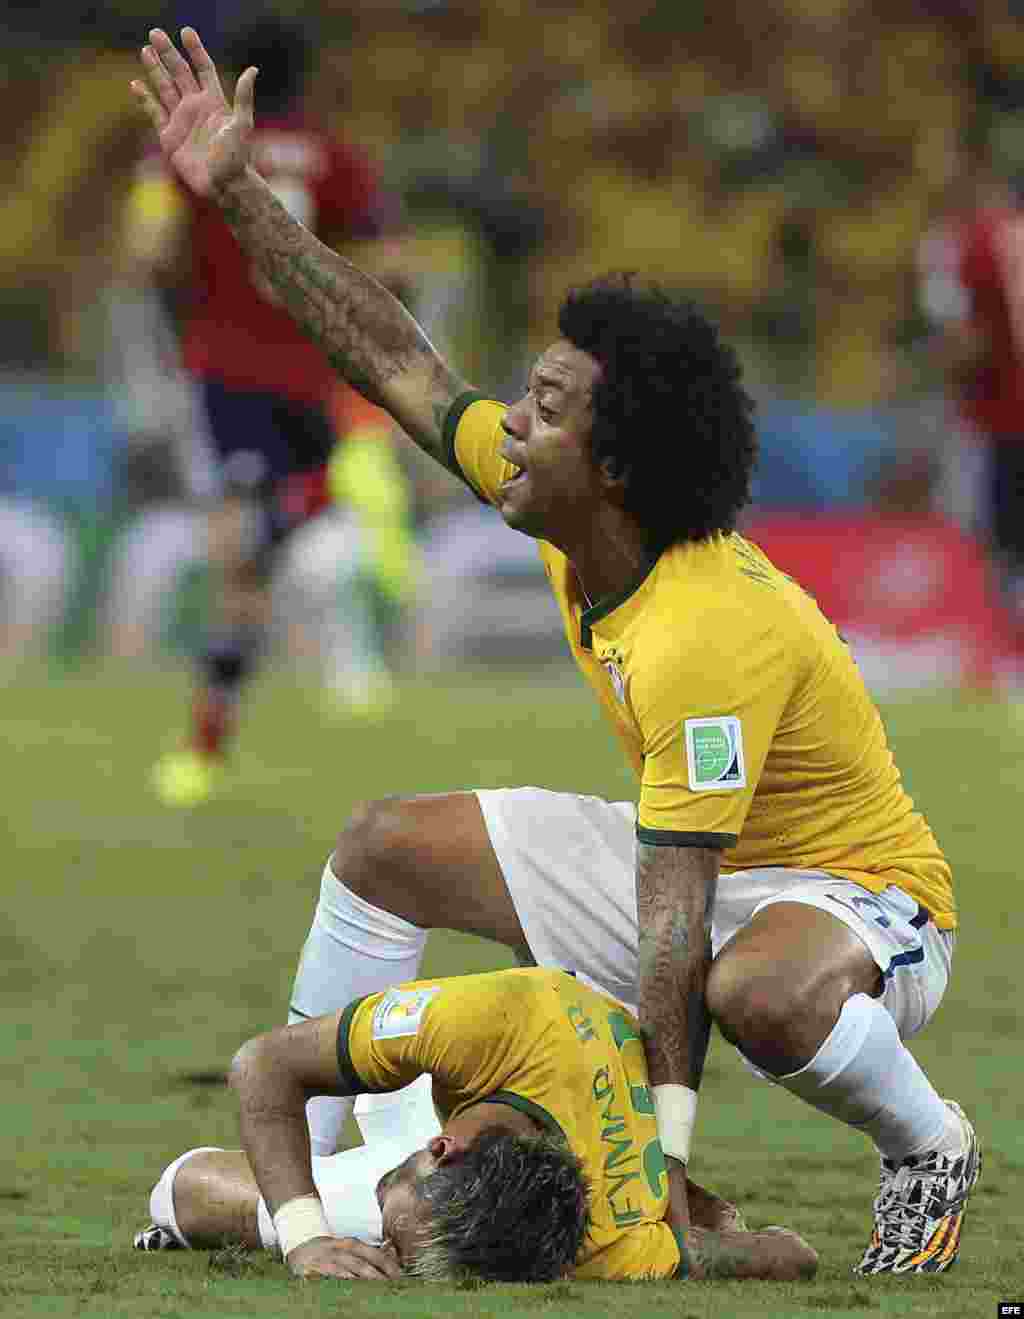  El defensa brasileño Marcelo (d) pide la asistencia para su compañero Neymar quien ha recibido un golpe en la espalda, durante el partido Brasil-Colombia, de cuartos de final del Mundial de Fútbol de Brasil 2014, en el Estadio Castelão de Fortaleza, Bras